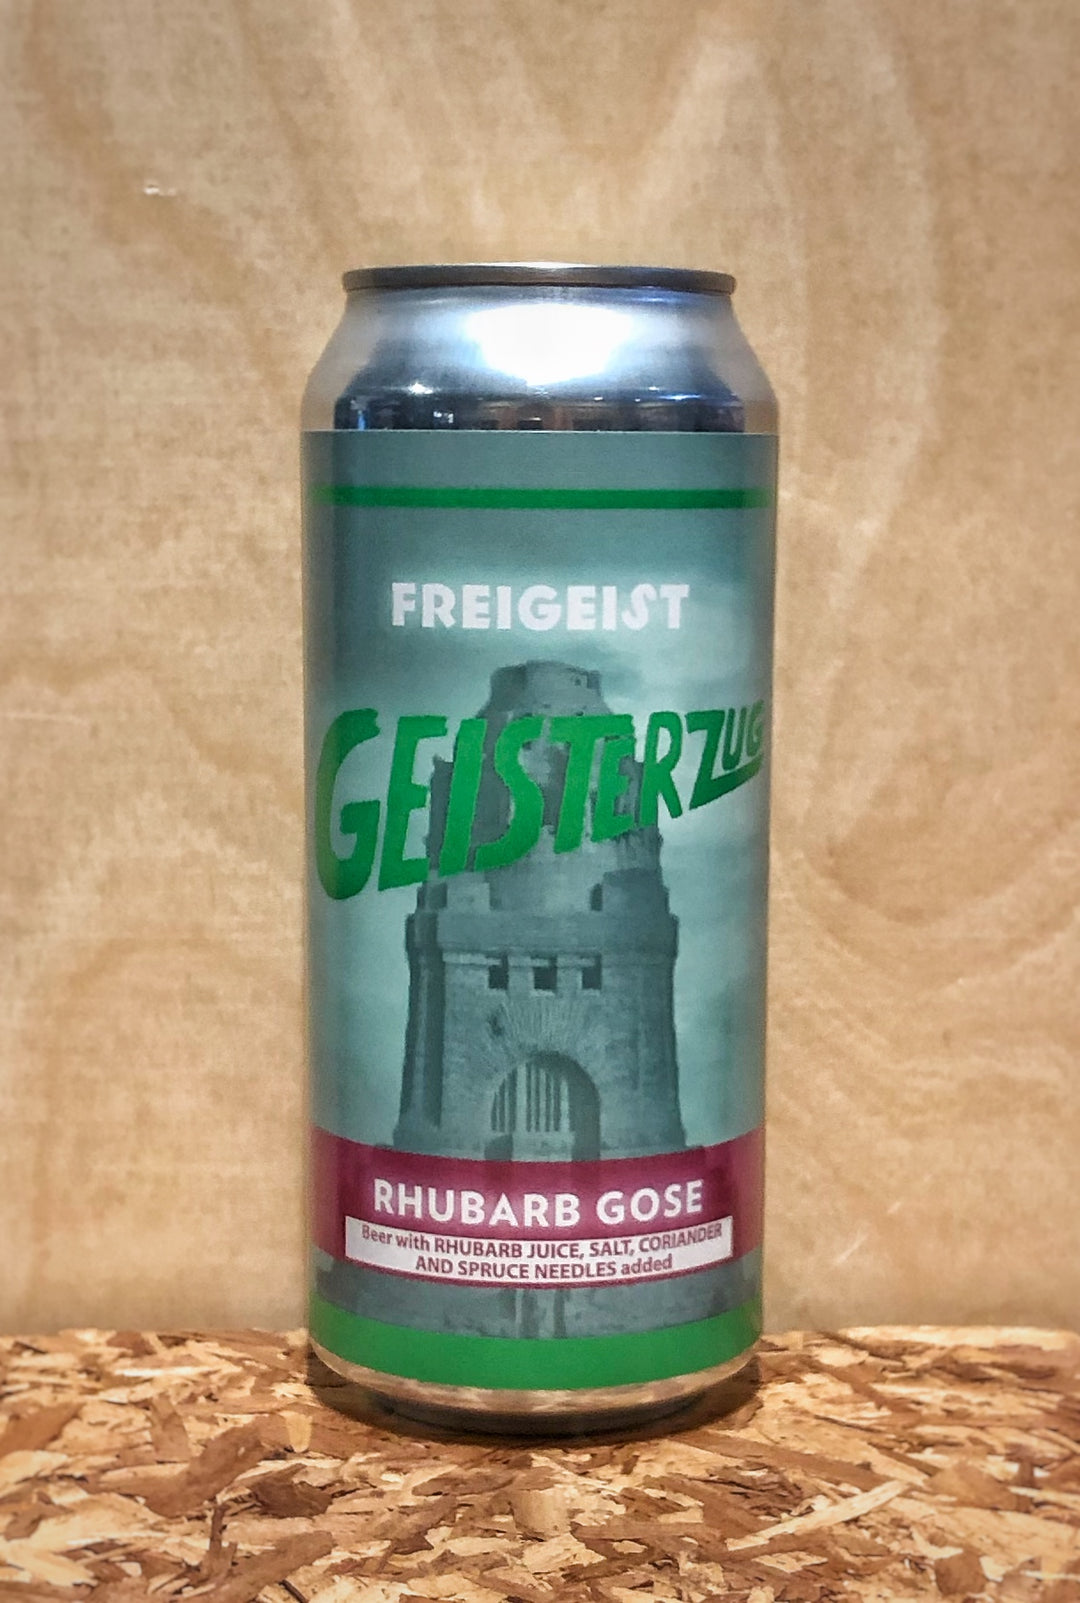 Freigeist Bierkultur 'Geisterzug' Rhubarb Gose (Stolberg, Germany)